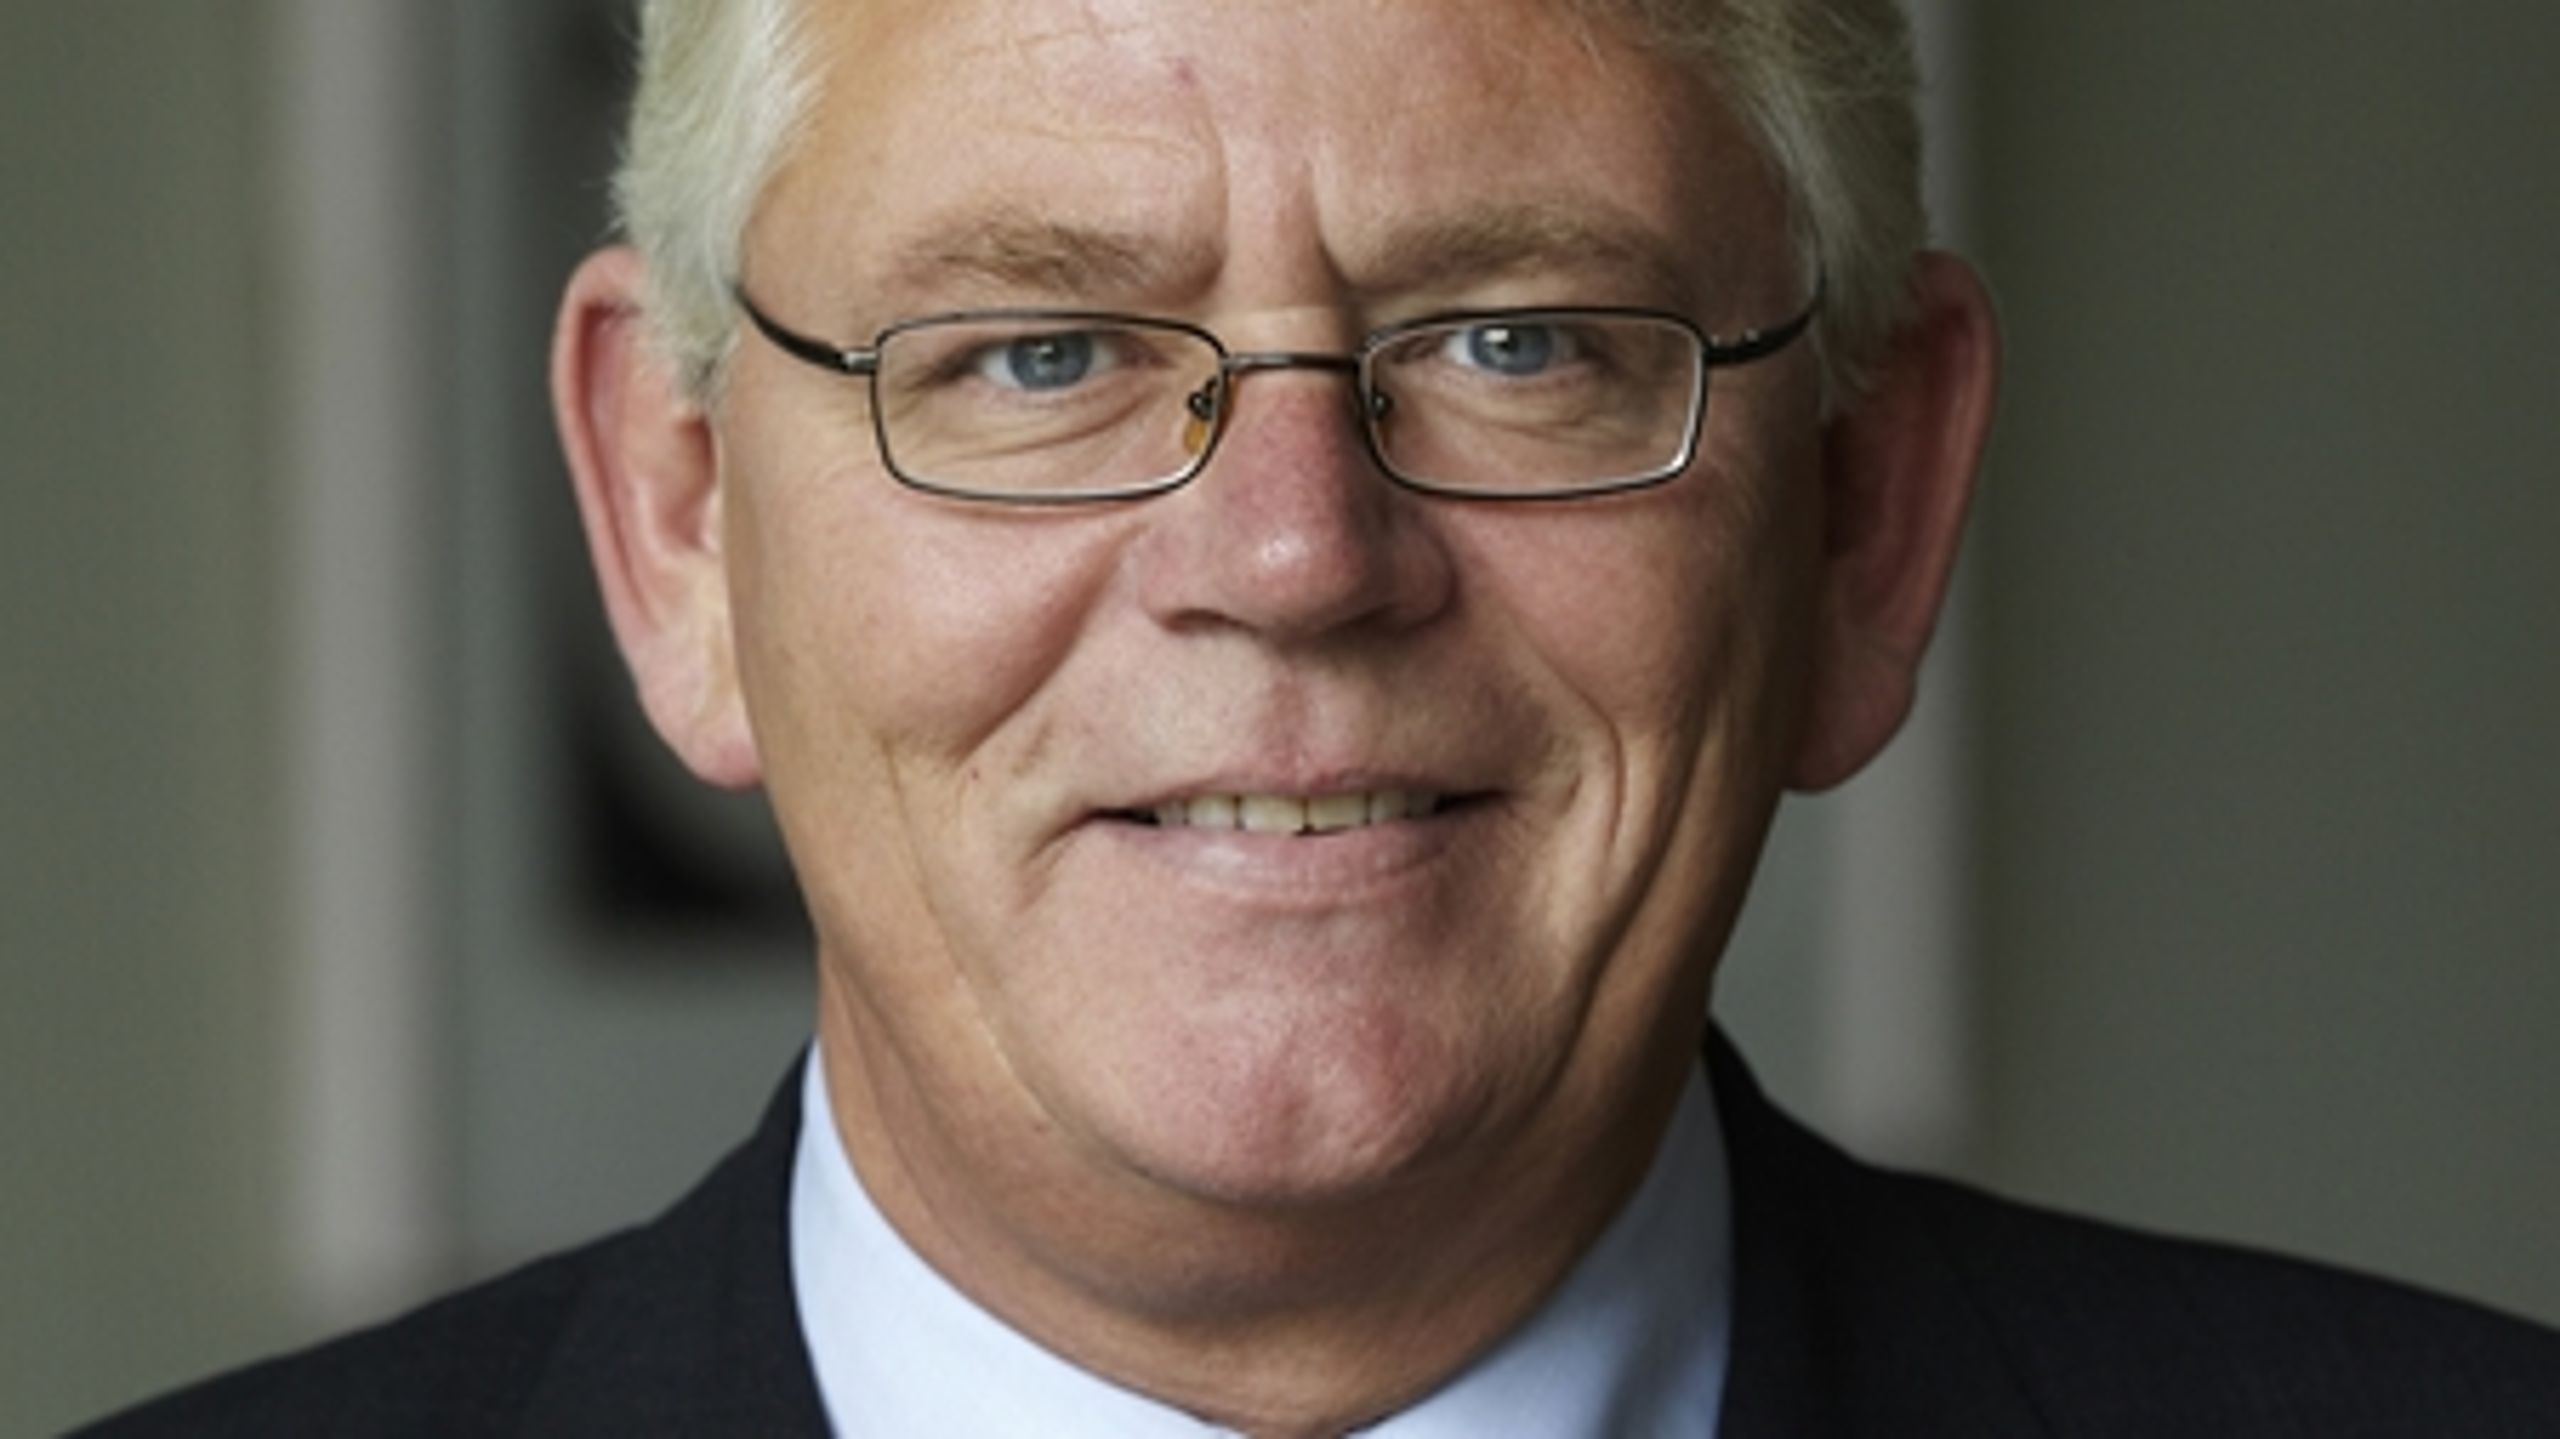 Rødovres borgmester, Erik Nielsen (S), har i 20 år kunnet bære byens borgmesterkæde.